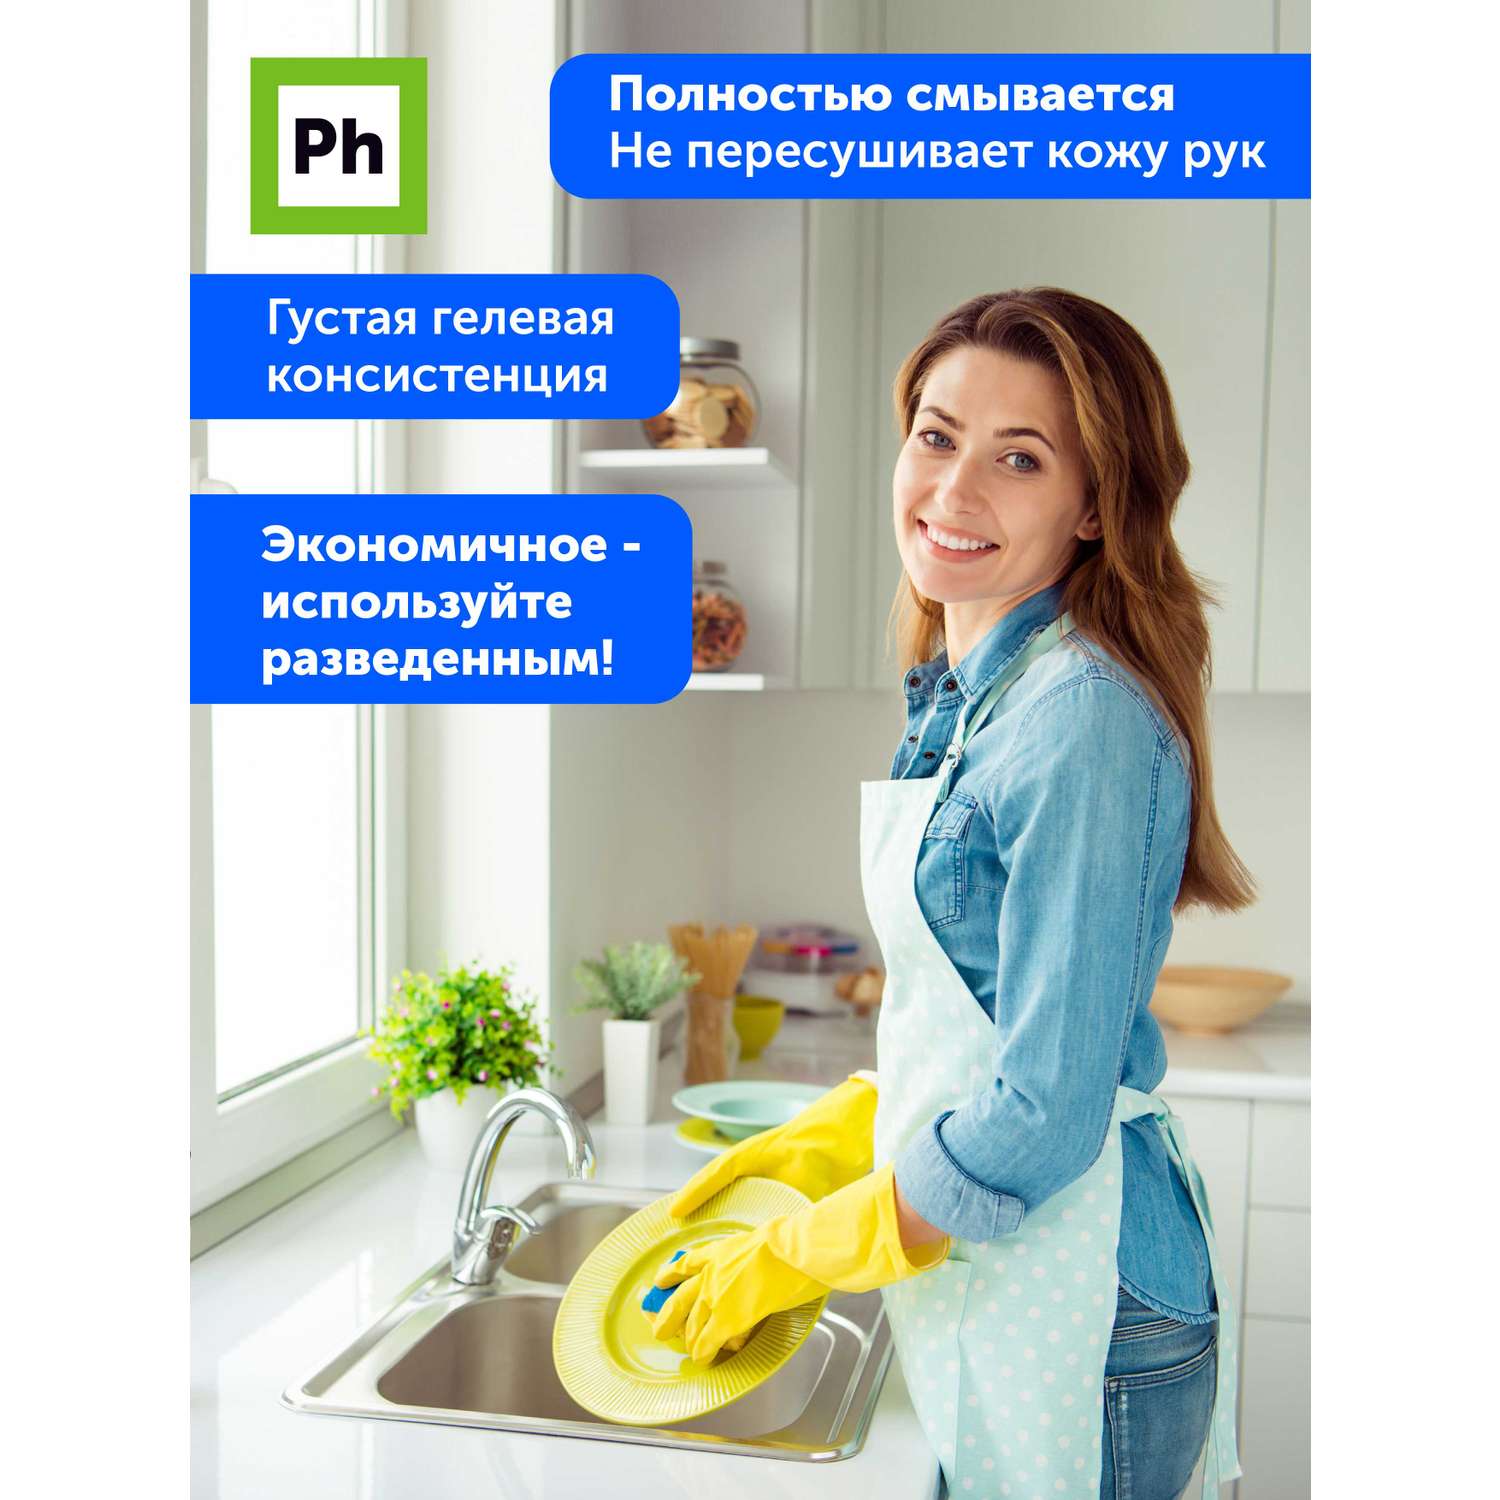 Набор средств для уборки Ph профессиональный Чистая кухня - фото 6